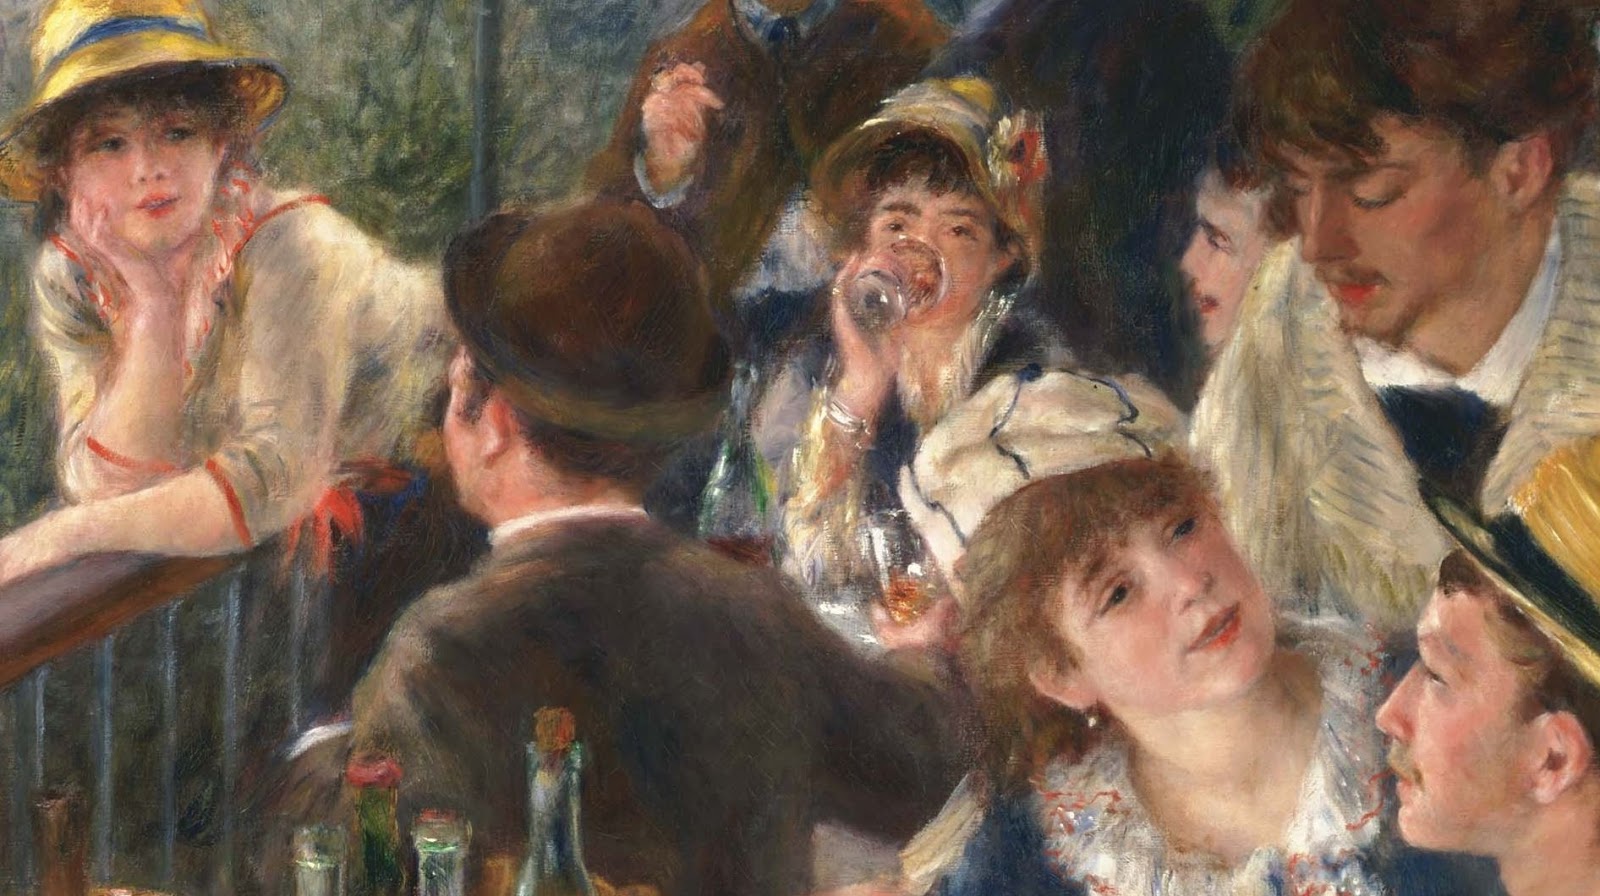 Pierre+Auguste+Renoir-1841-1-19 (570).JPG